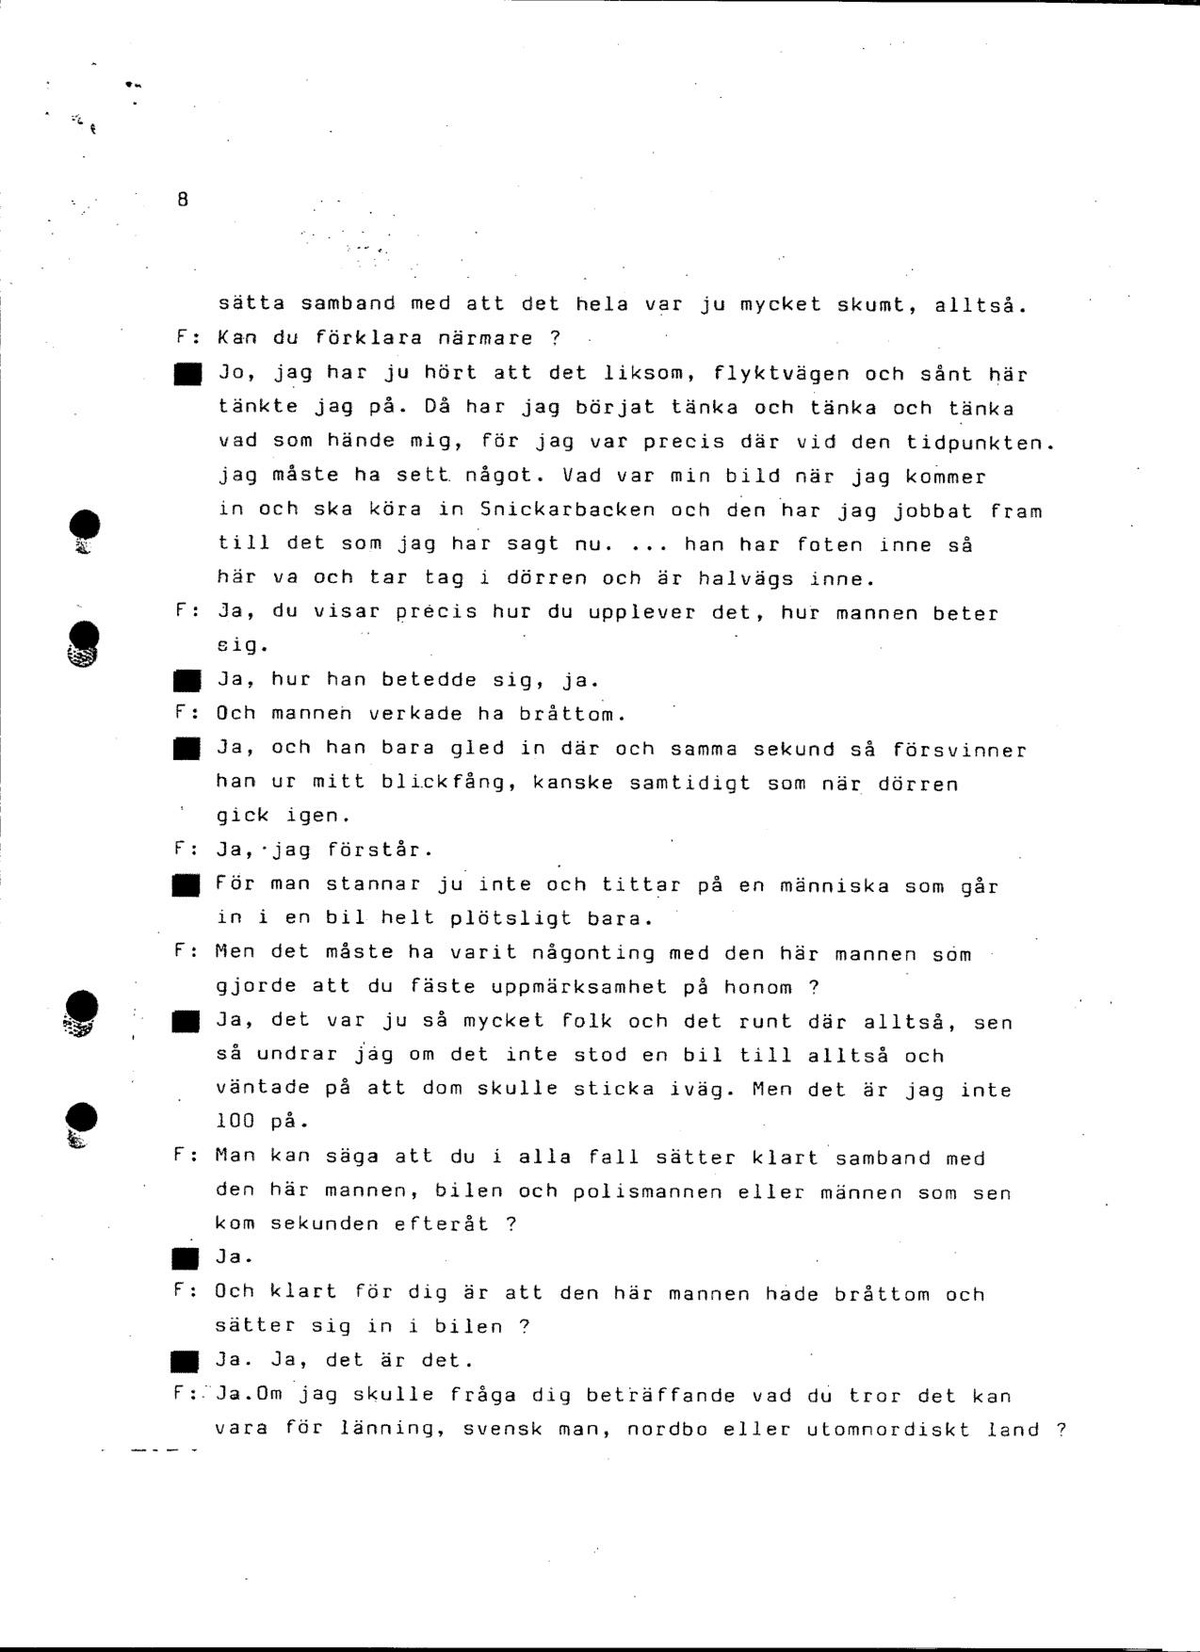 Pol-1986-03-03 EAE250-00-B Förhör med Taxichaufför Hongelin.pdf